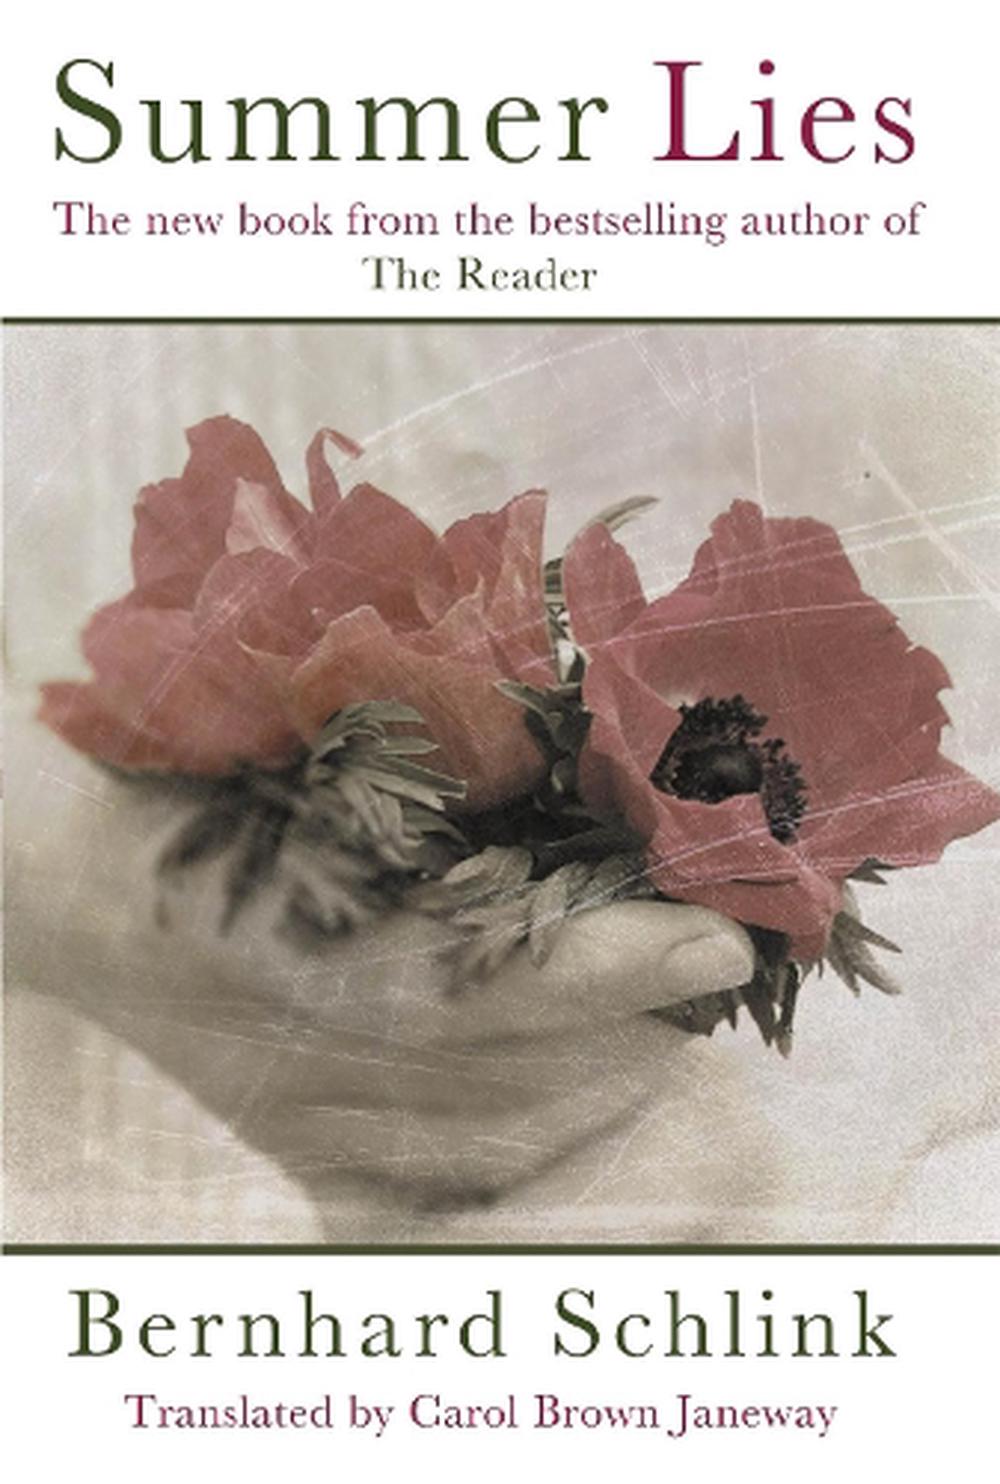 the book the reader by bernhard schlink